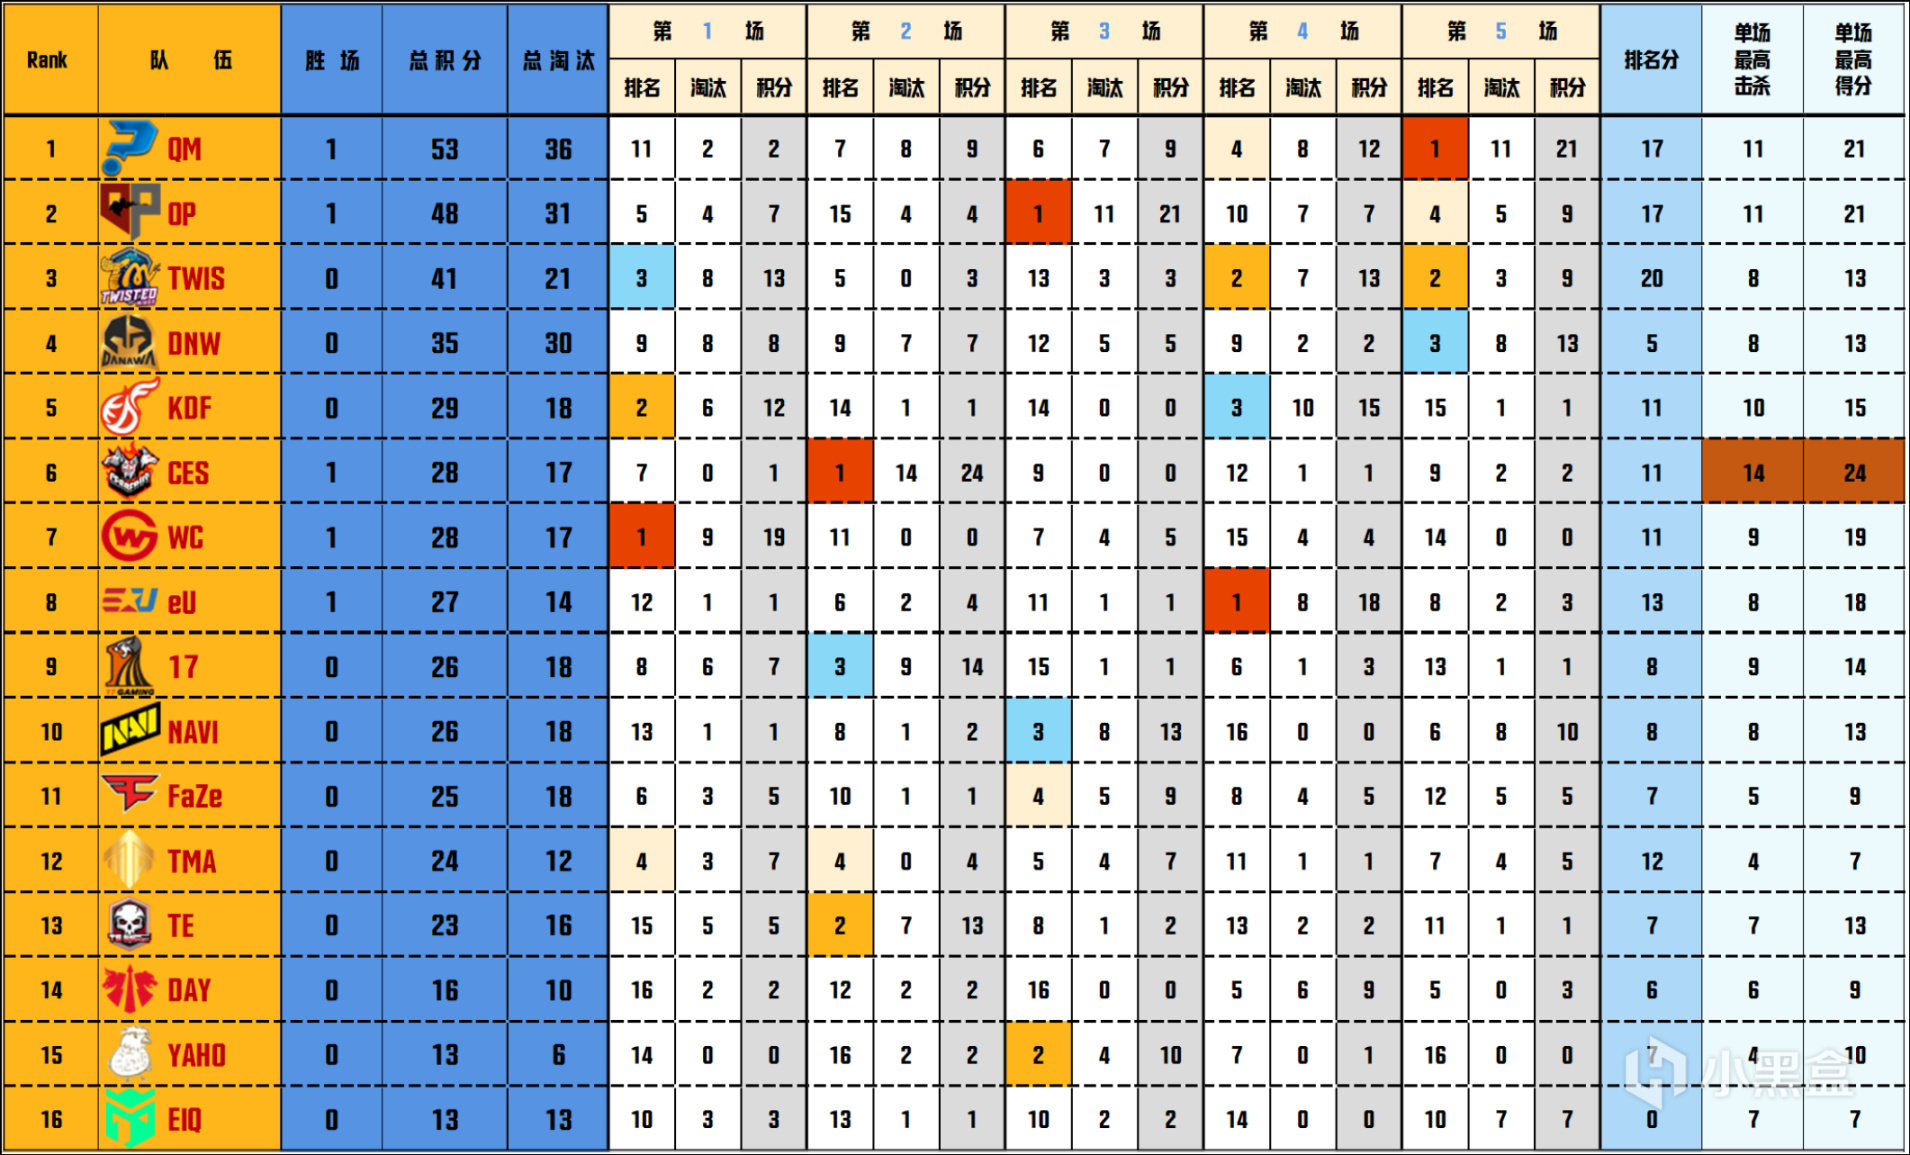 【數據流】PGC決賽D3/4,TWIS 140分來到榜首,DNW_seoul戰神31淘汰-第2張